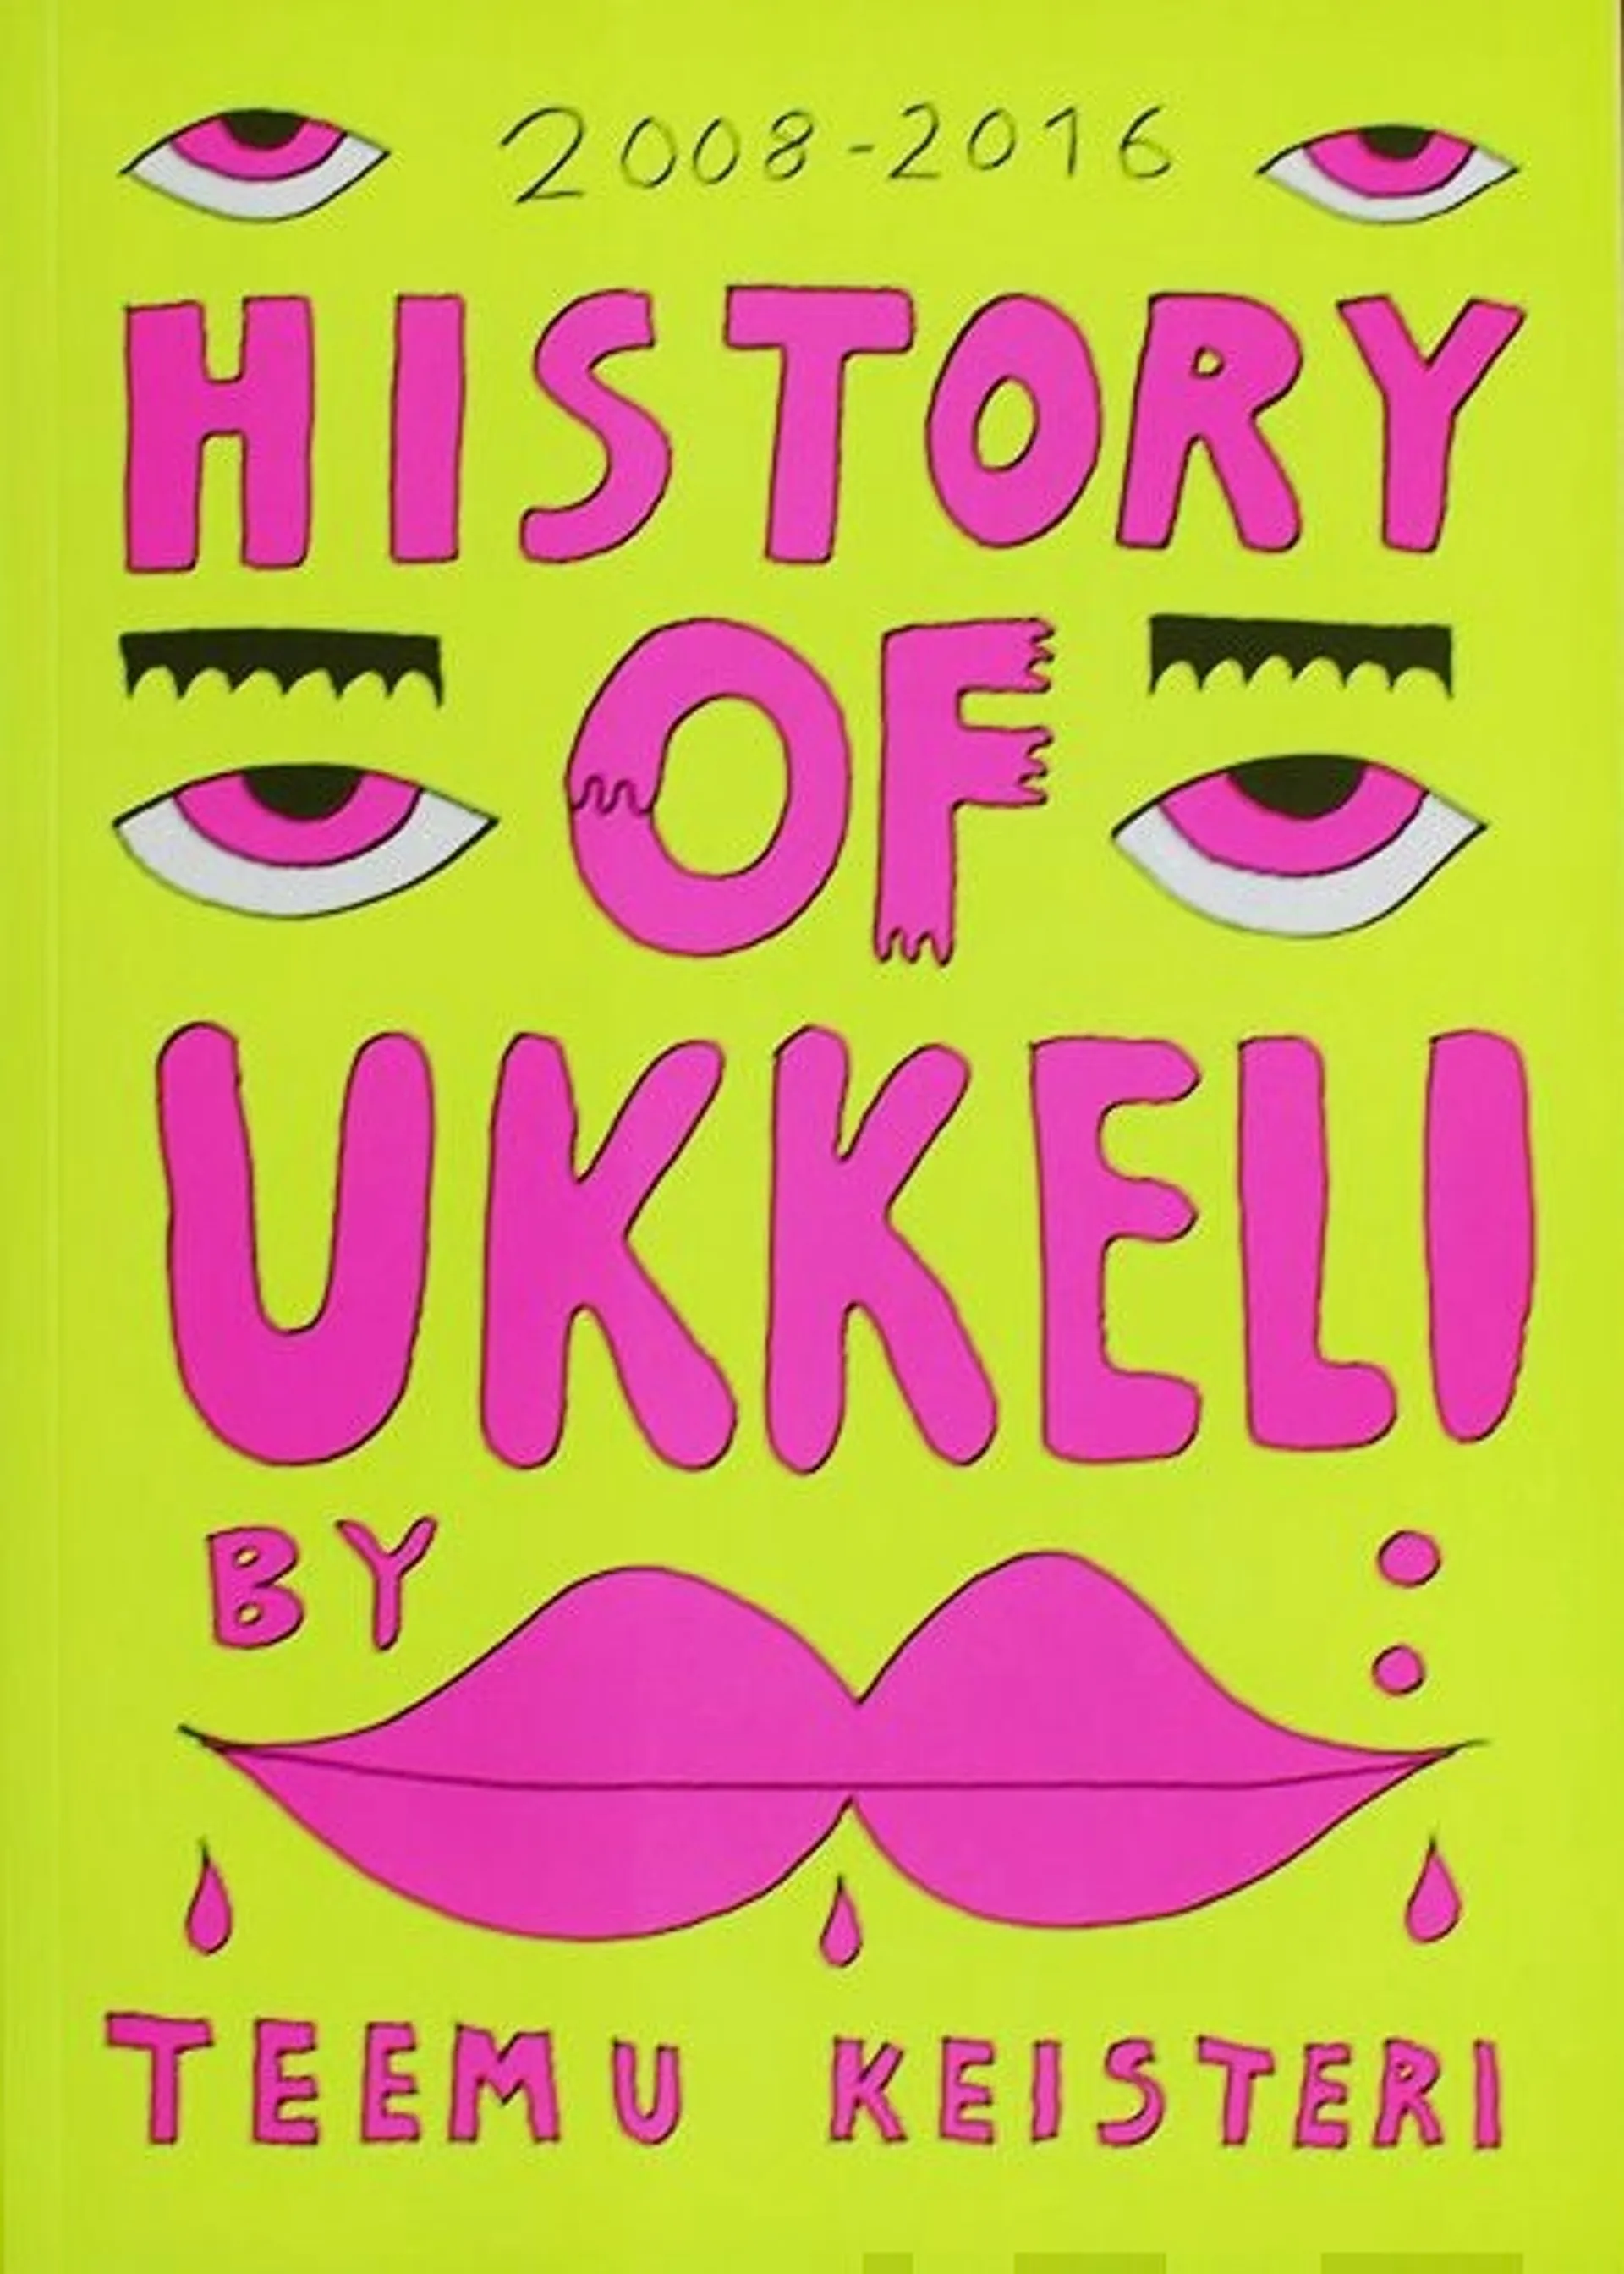 Keisteri, History of Ukkeli